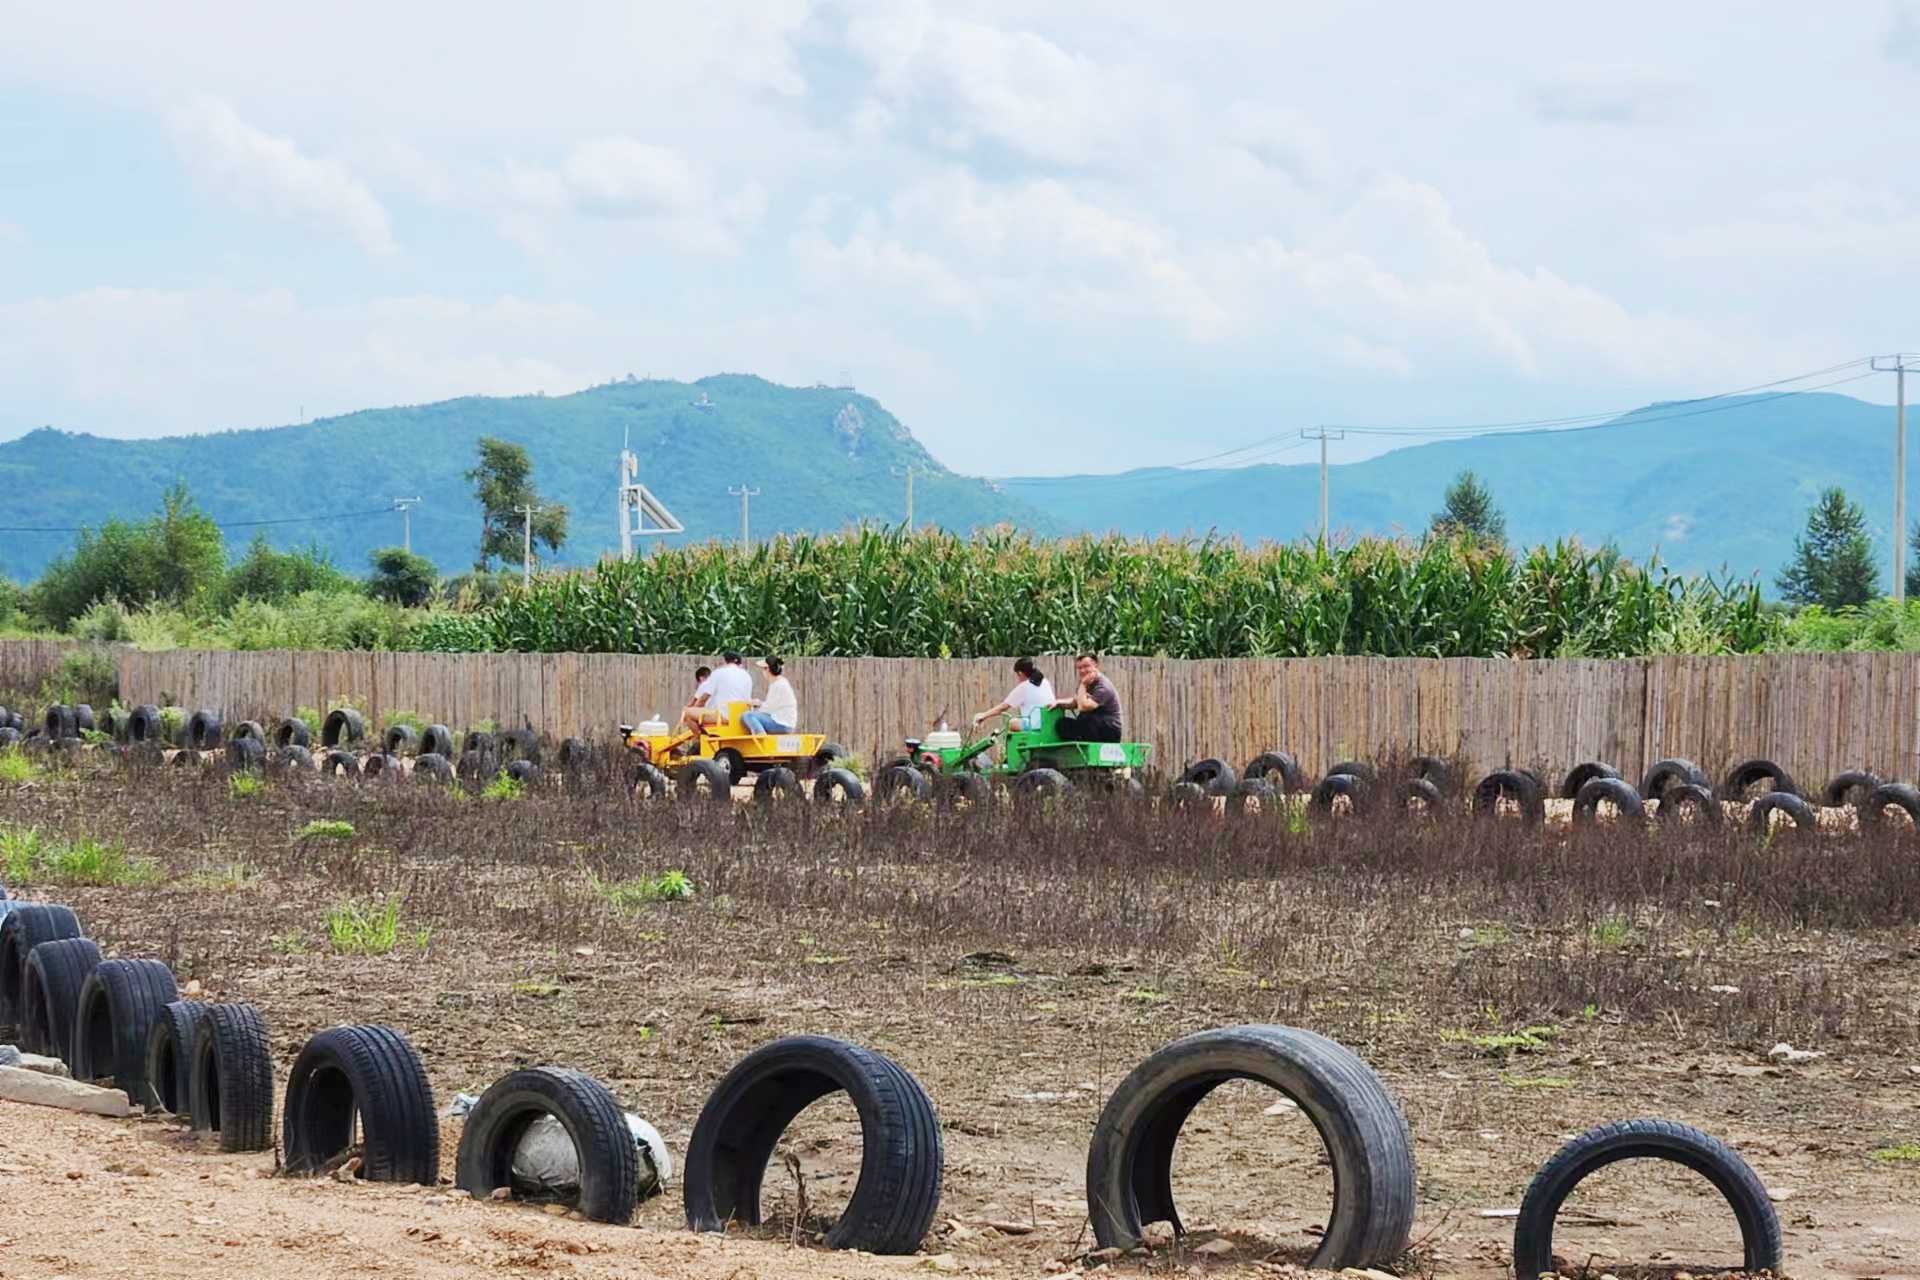 游客们开着儿童拖拉机体验农耕乐趣。人民网记者 金洪花摄